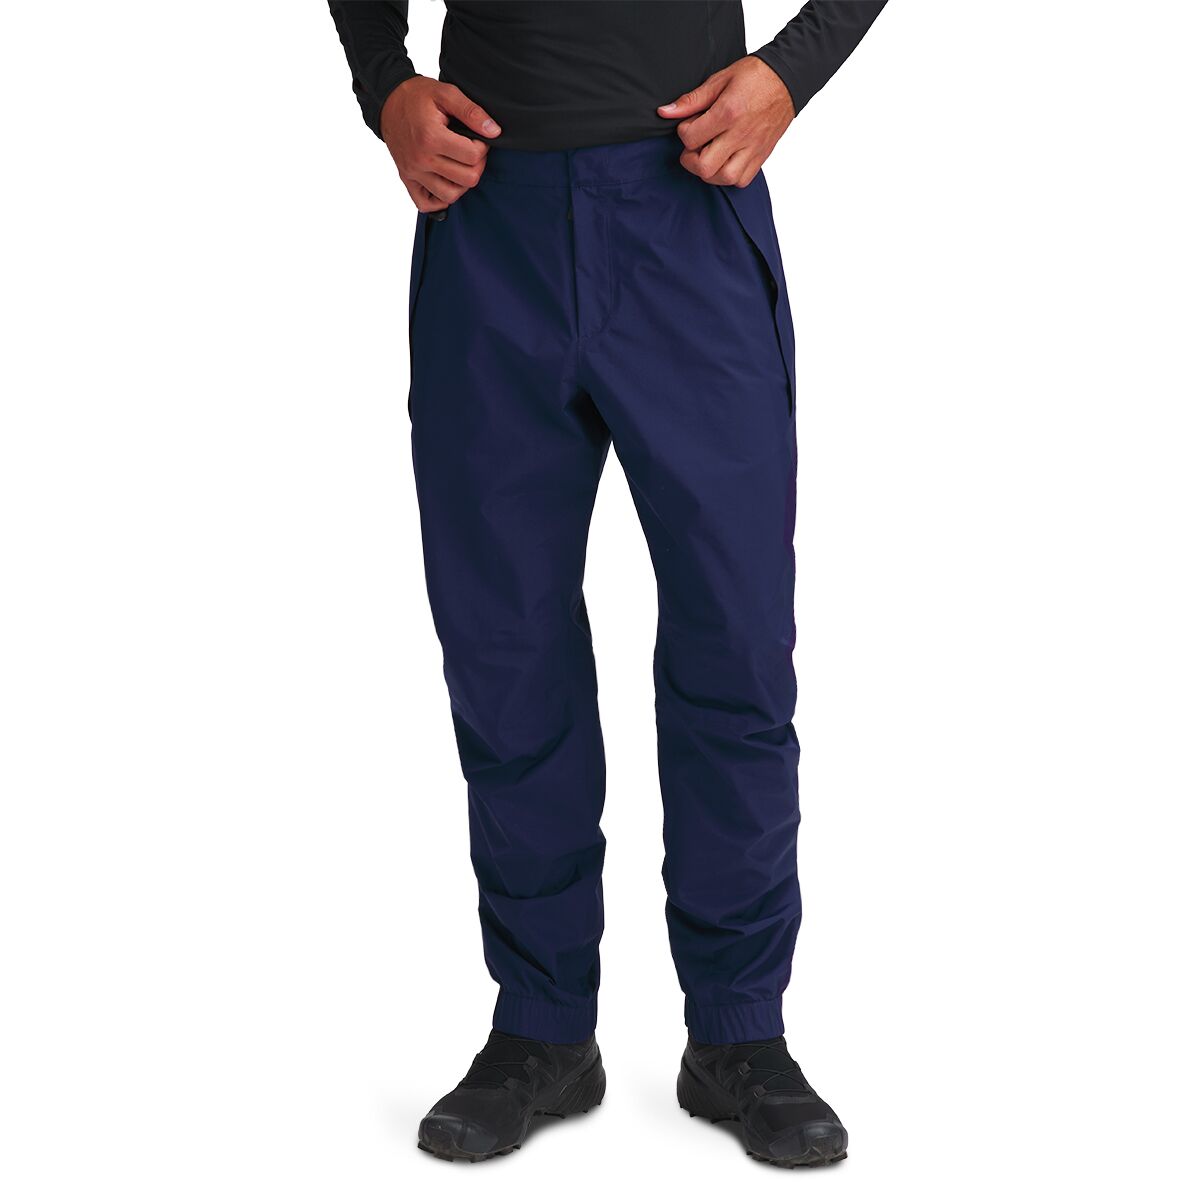 Moncler Grenoble Sweatpants - Men's